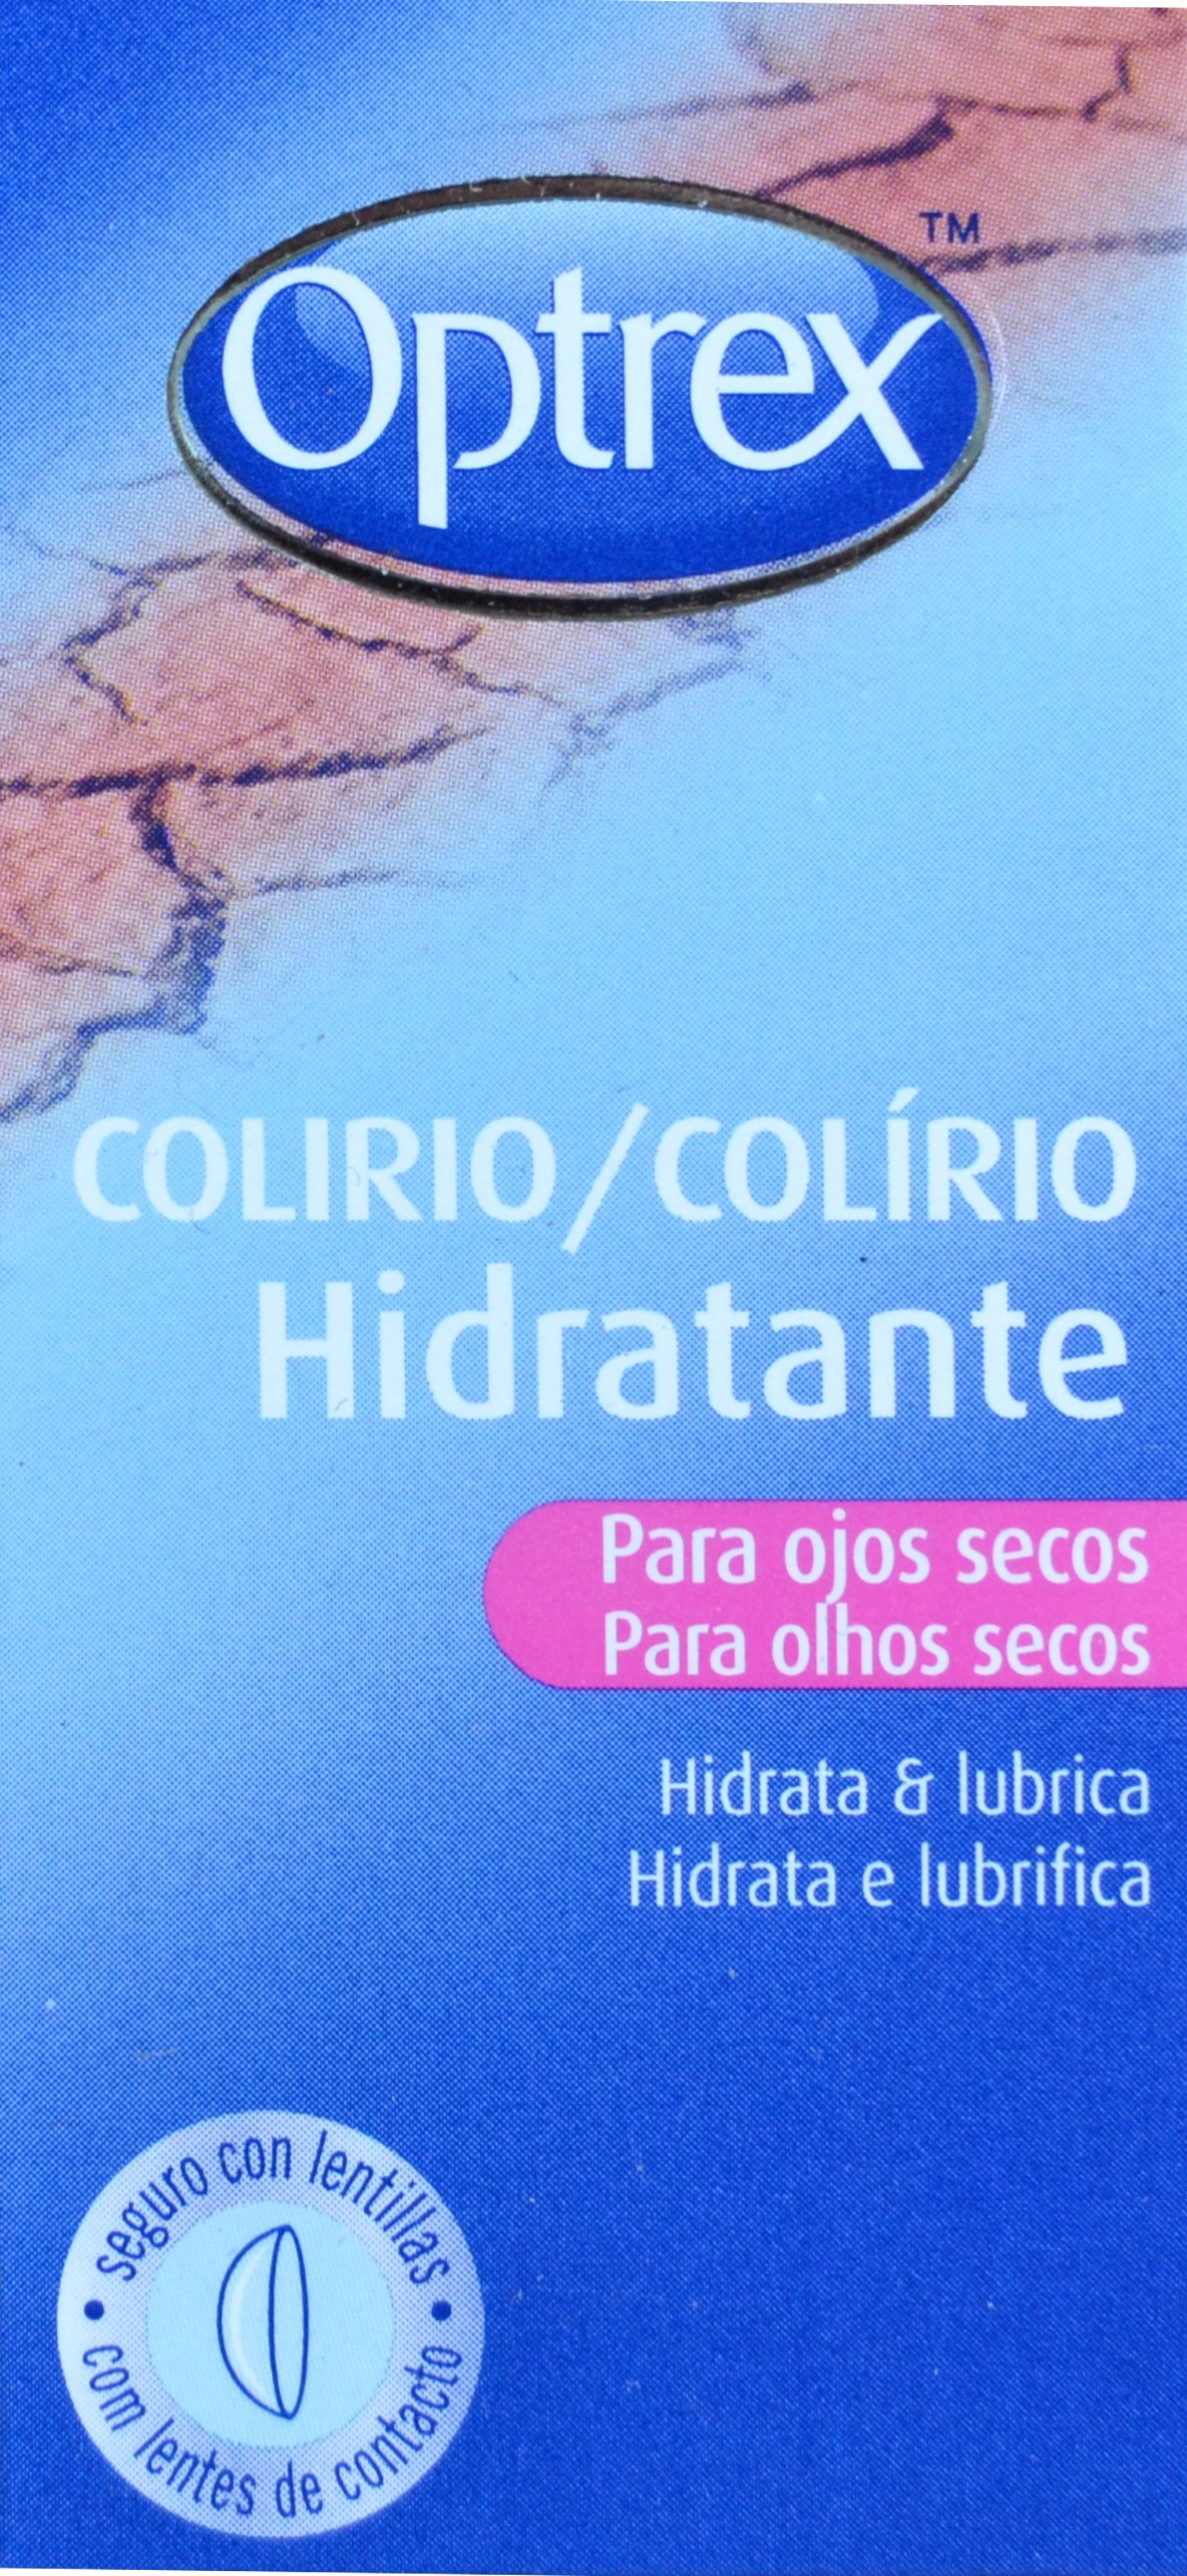 OPTREX COLIRIO HIDRATANTE PARA OJOS SECOS 10 ML - Farmacia Anna Riba